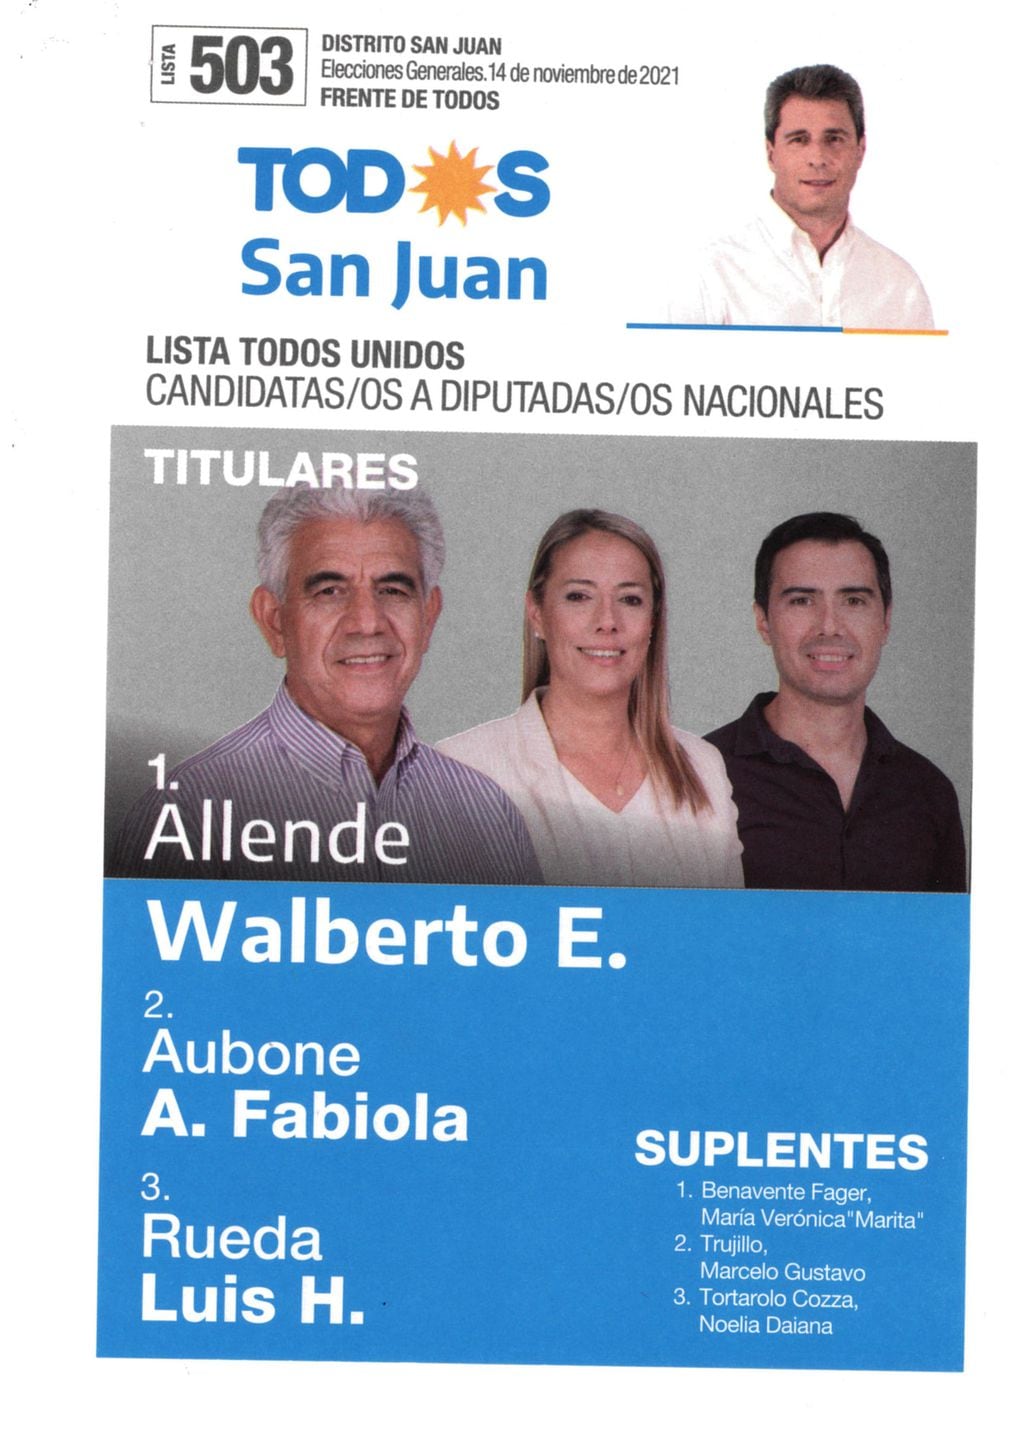 En la boleta del oficialismo sanjuanino aparecen las fotos del gobernador Uñac y de los tres candidatos.